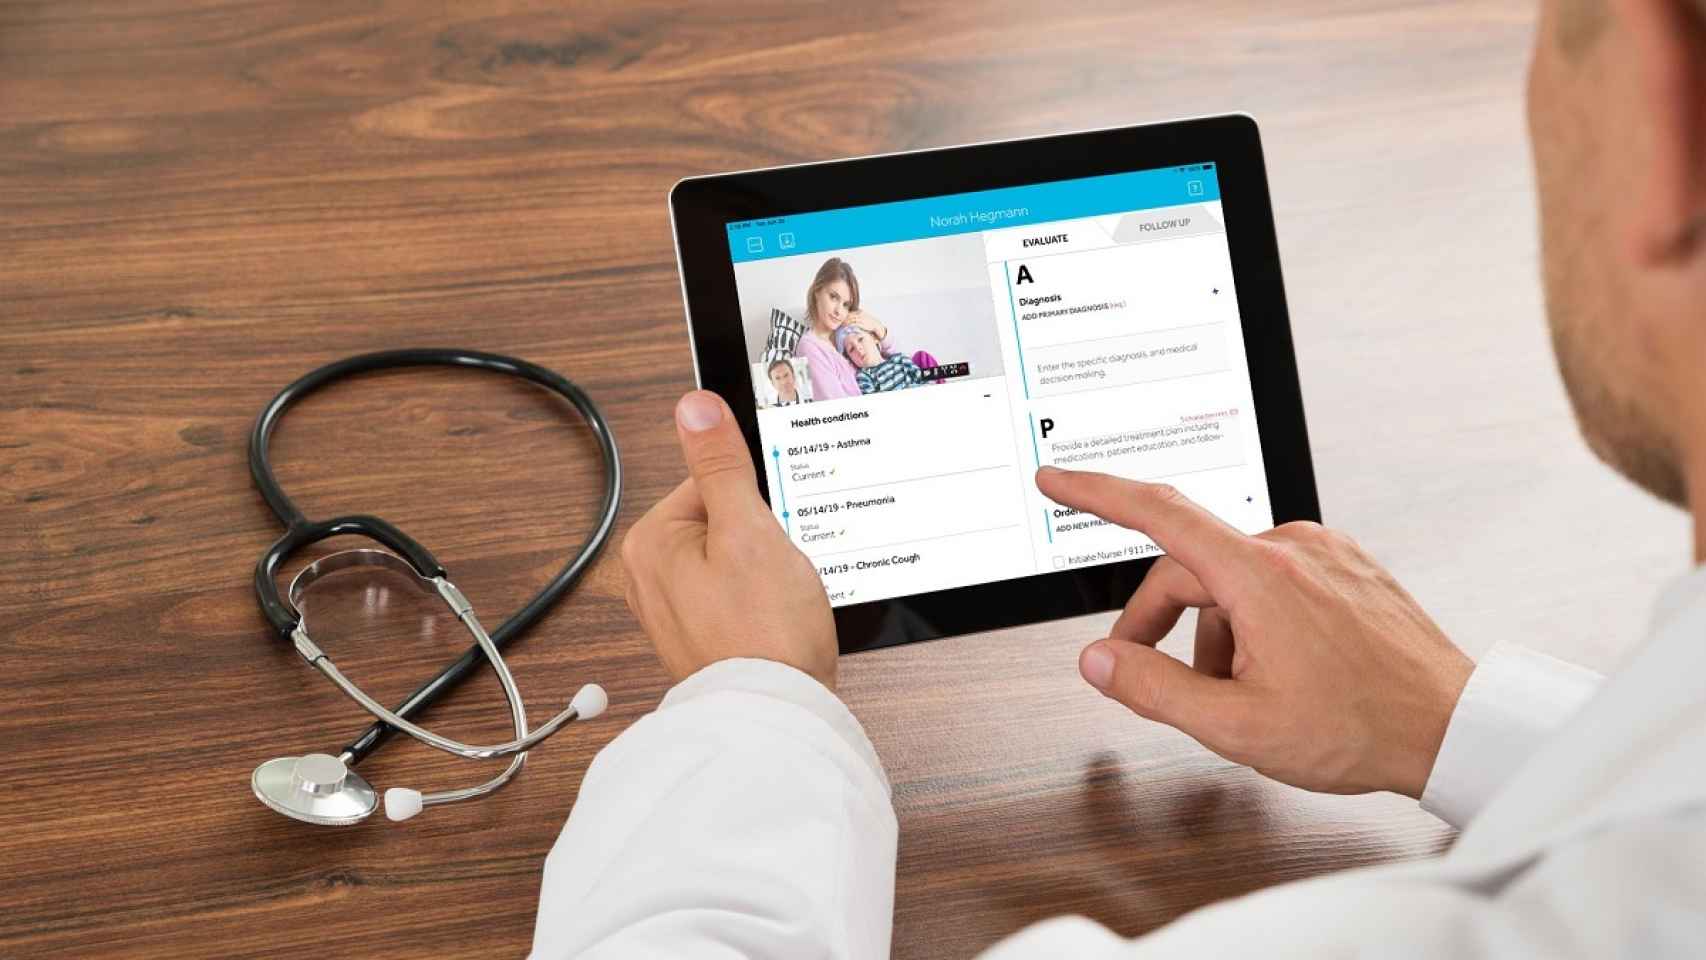 Movistar Salud: un servicio de telemedicina para empresas y particulares